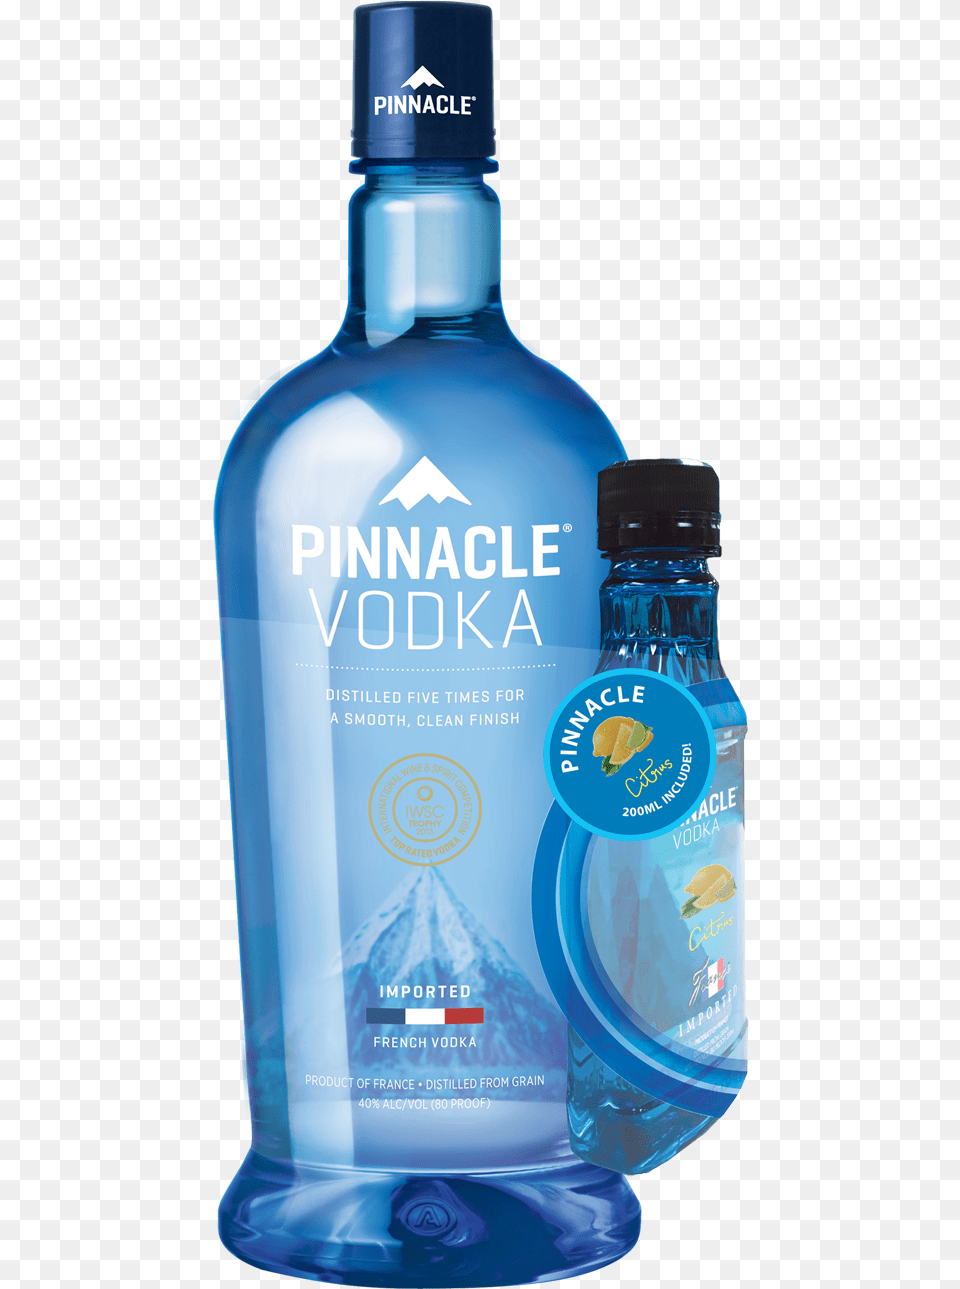 Orange Flavored Vodka, Alcohol, Beverage, Liquor, Bottle Png Image